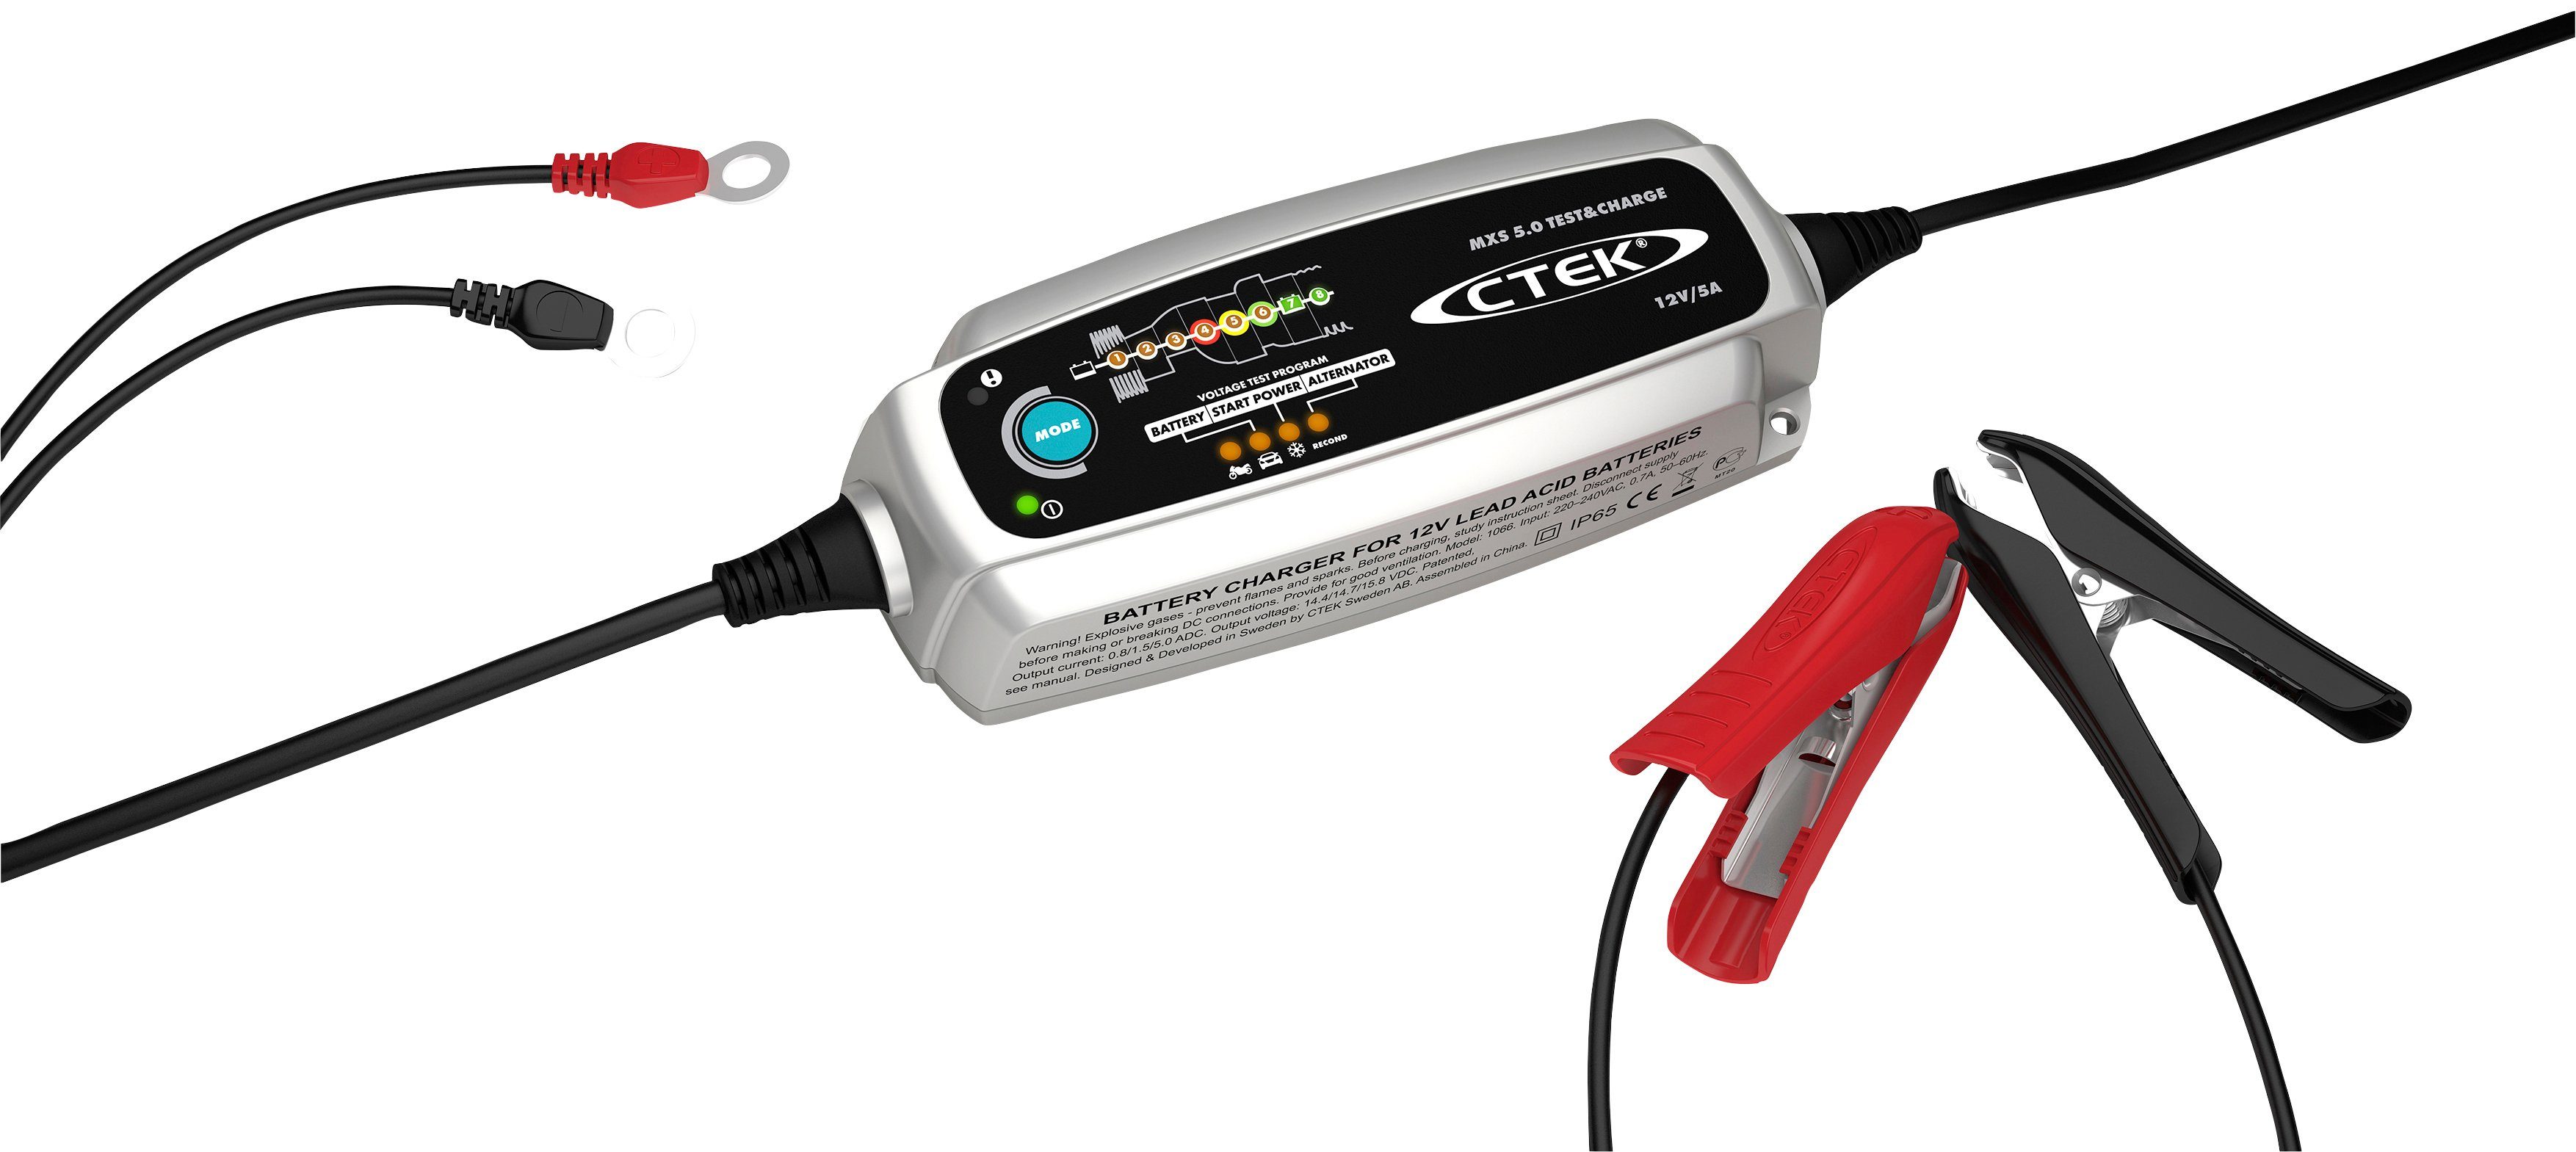 CTEK MXS 5.0 Test & Charge Batterie-Ladegerät (Spannung, Startleistung und  Leistungsverhalten der Lichtmaschine)